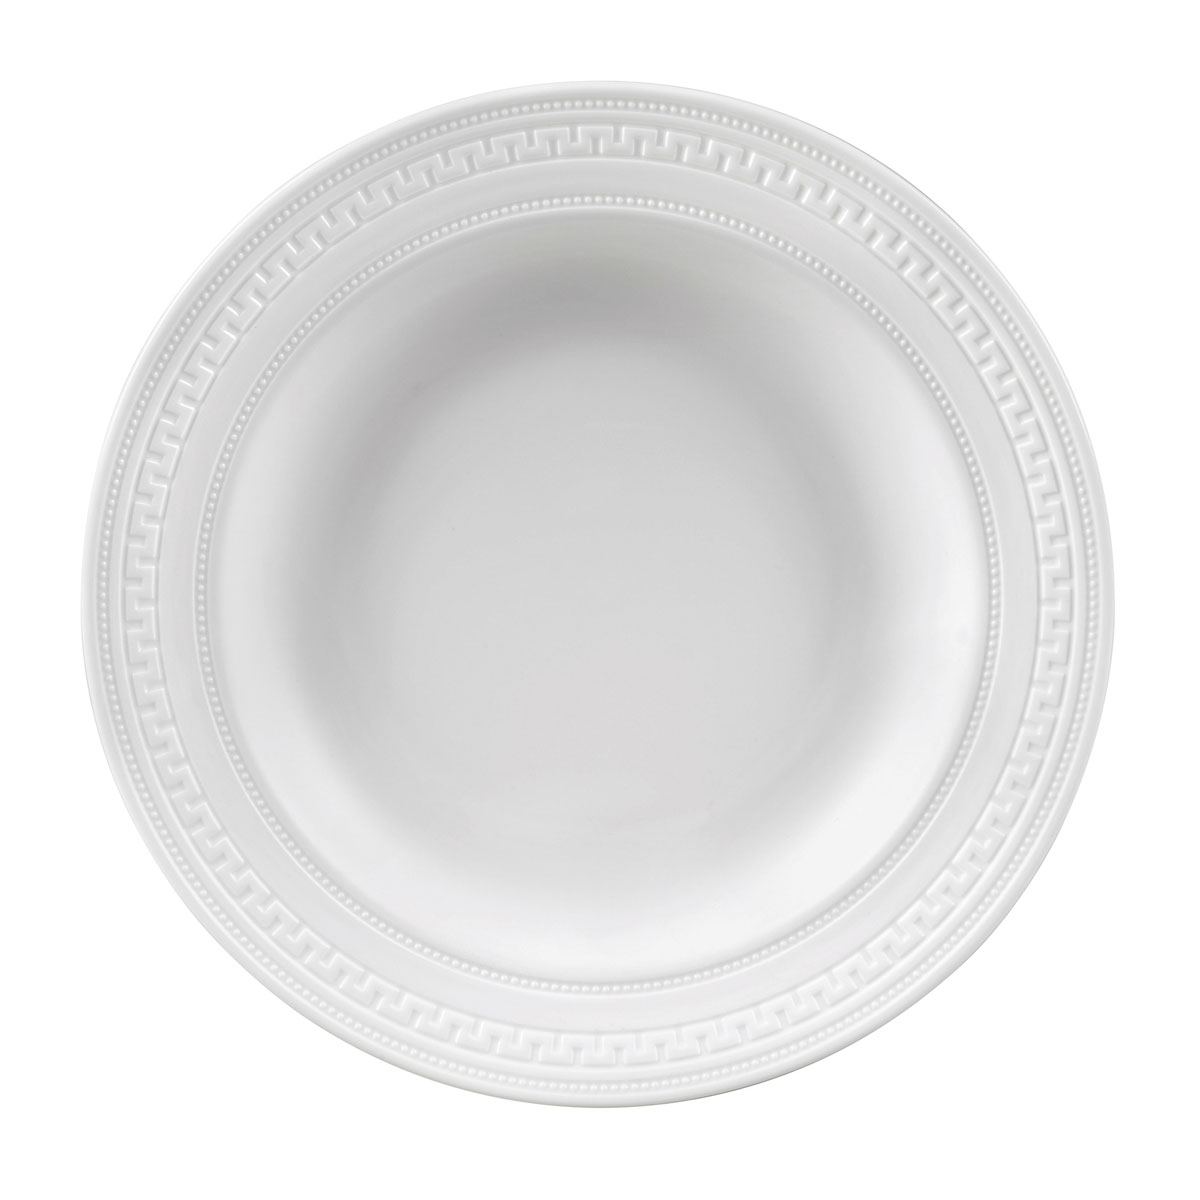 Тарелка суповая Wedgwood Intaglio 23 см тарелка суповая glory white 23 см